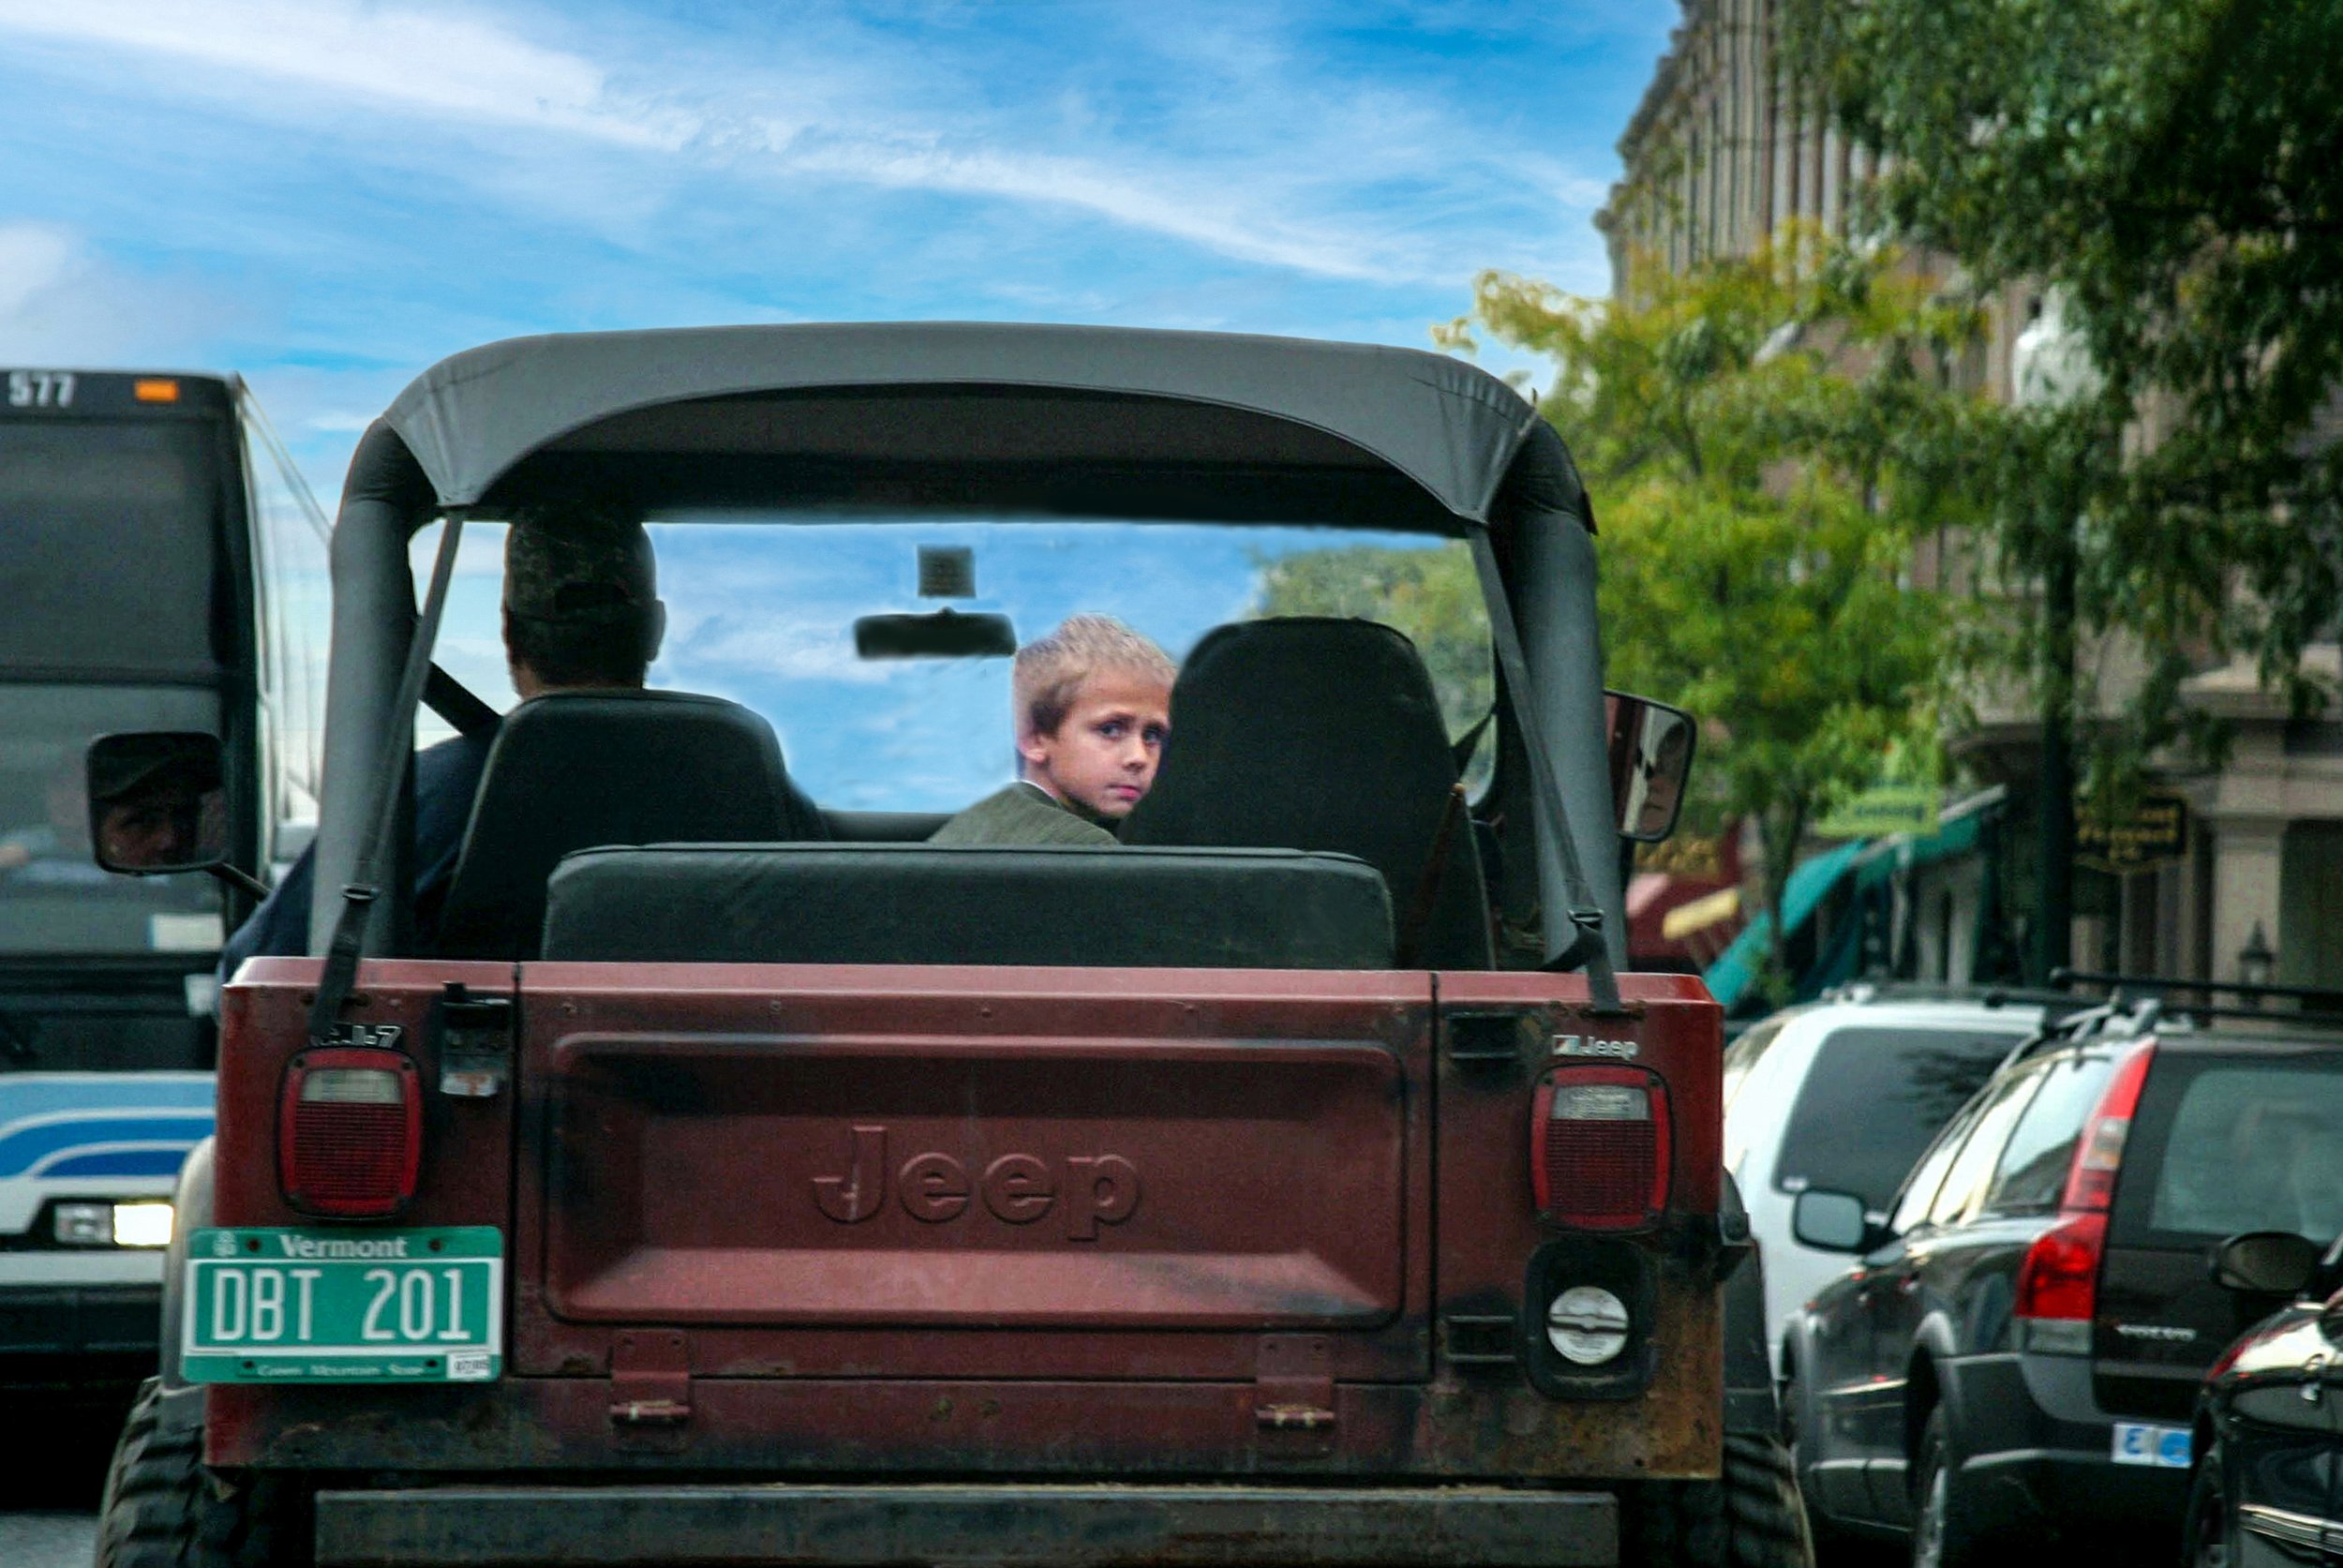 Boy in back of Jeep in Woodstock-edit.jpg